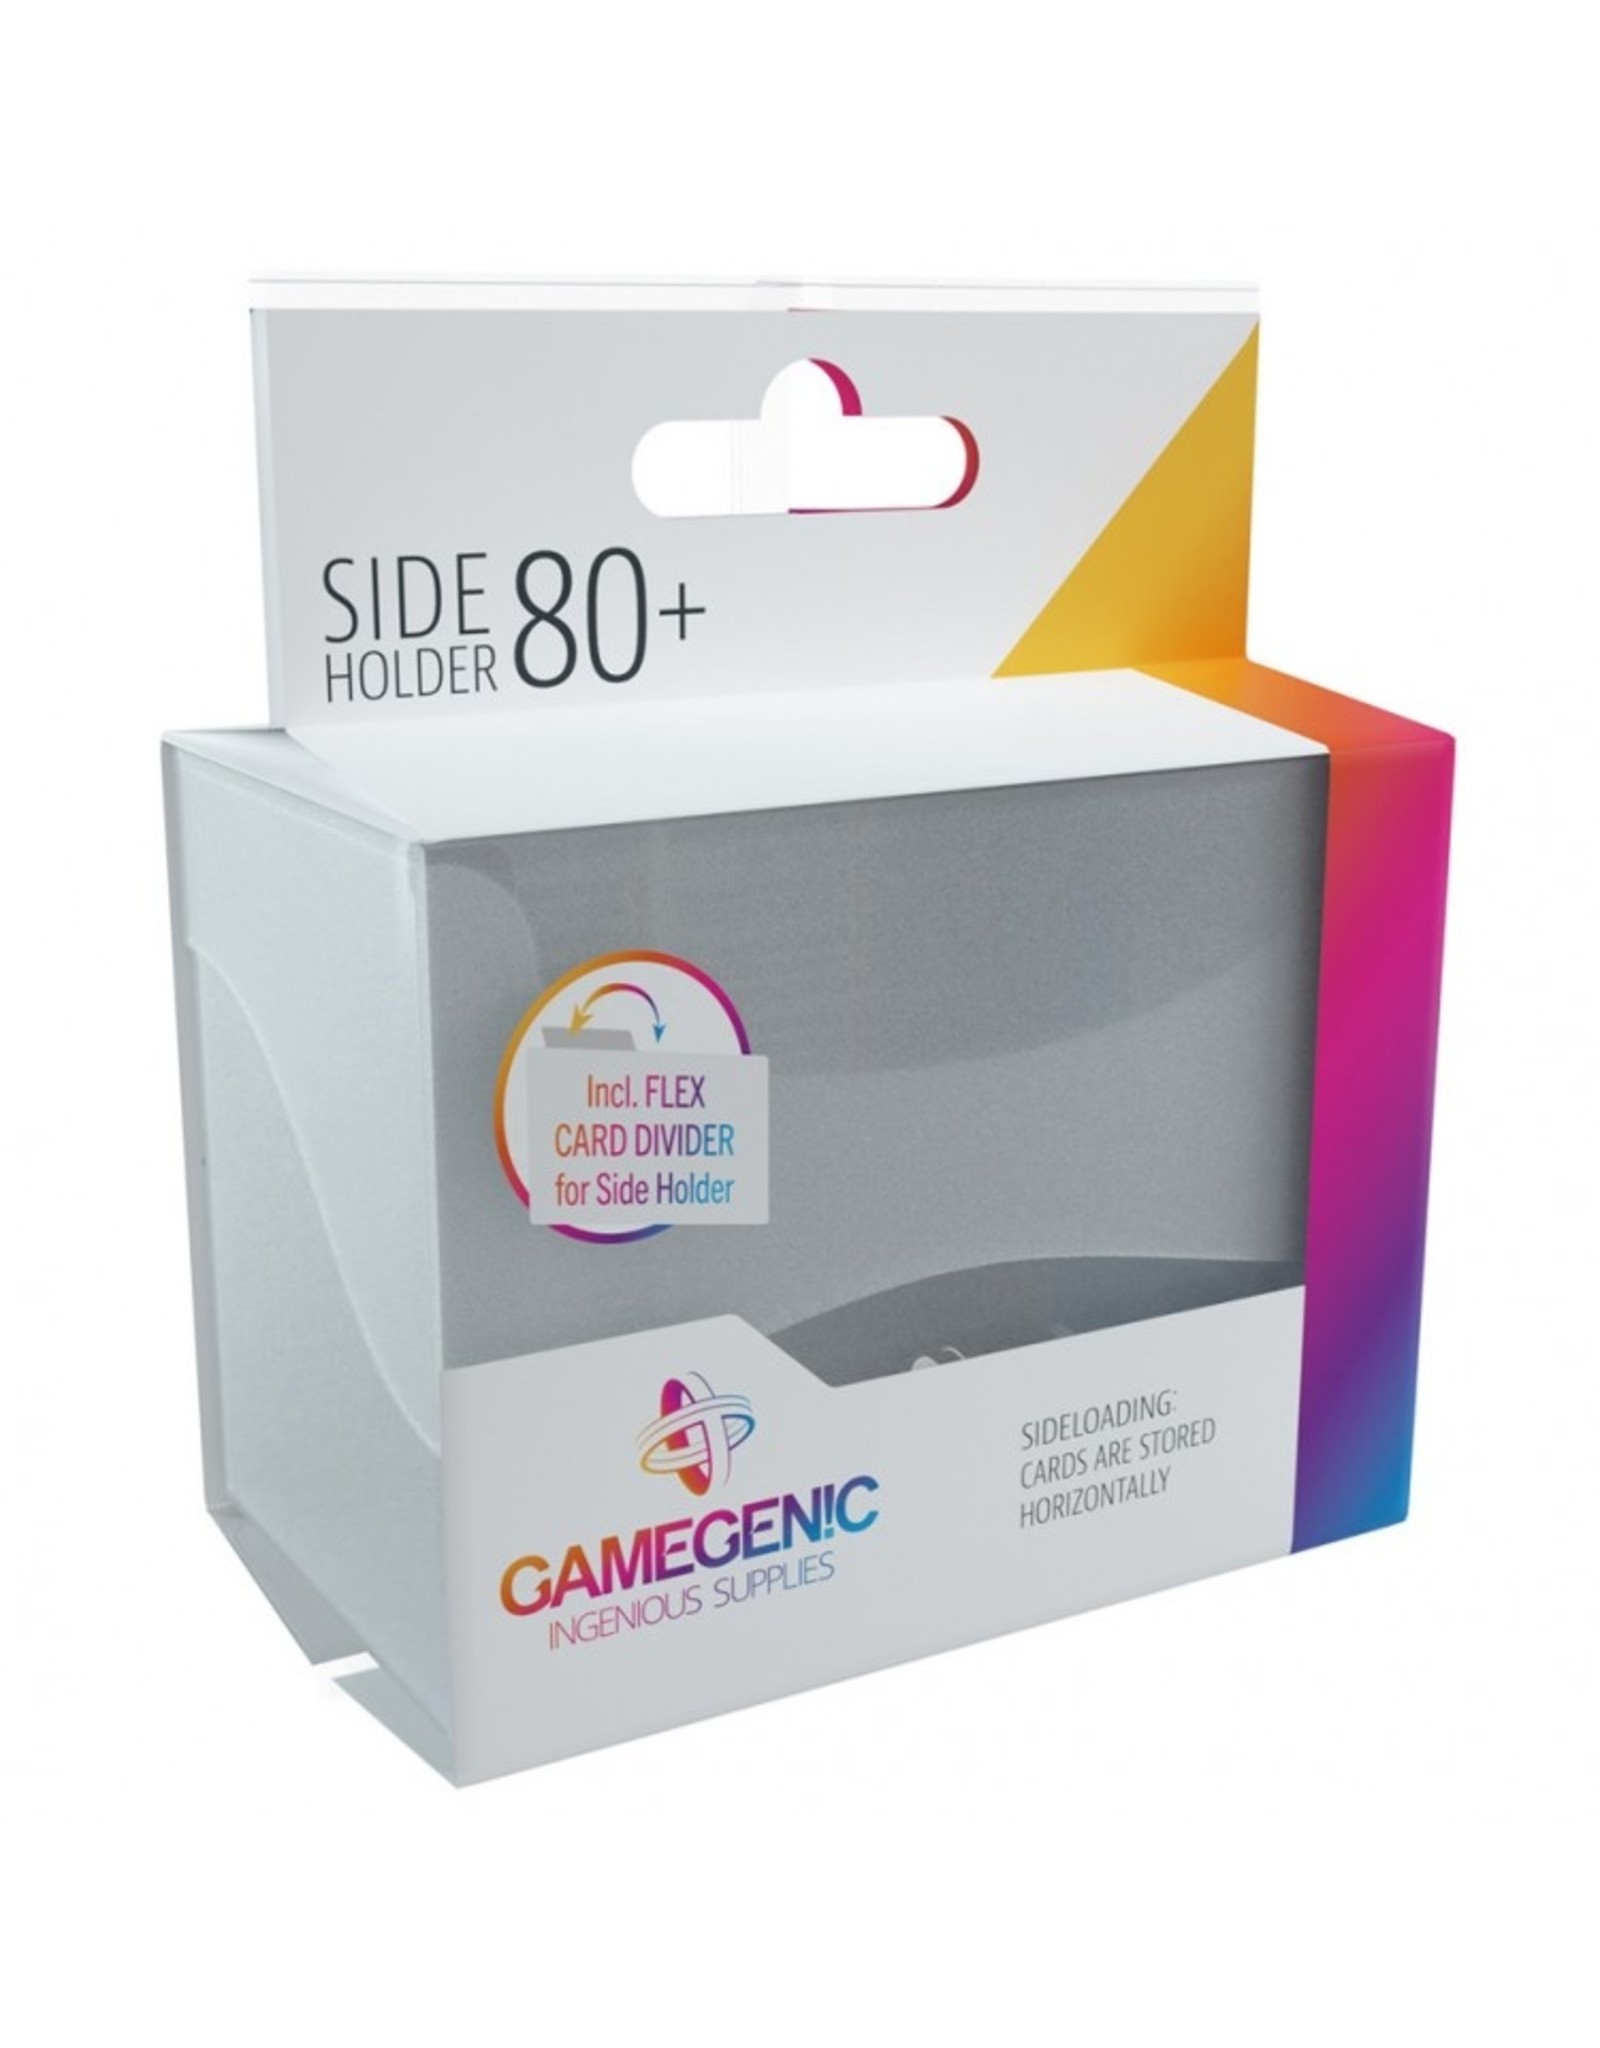 GameGenic Deck Box: Side Holder 80+ CL